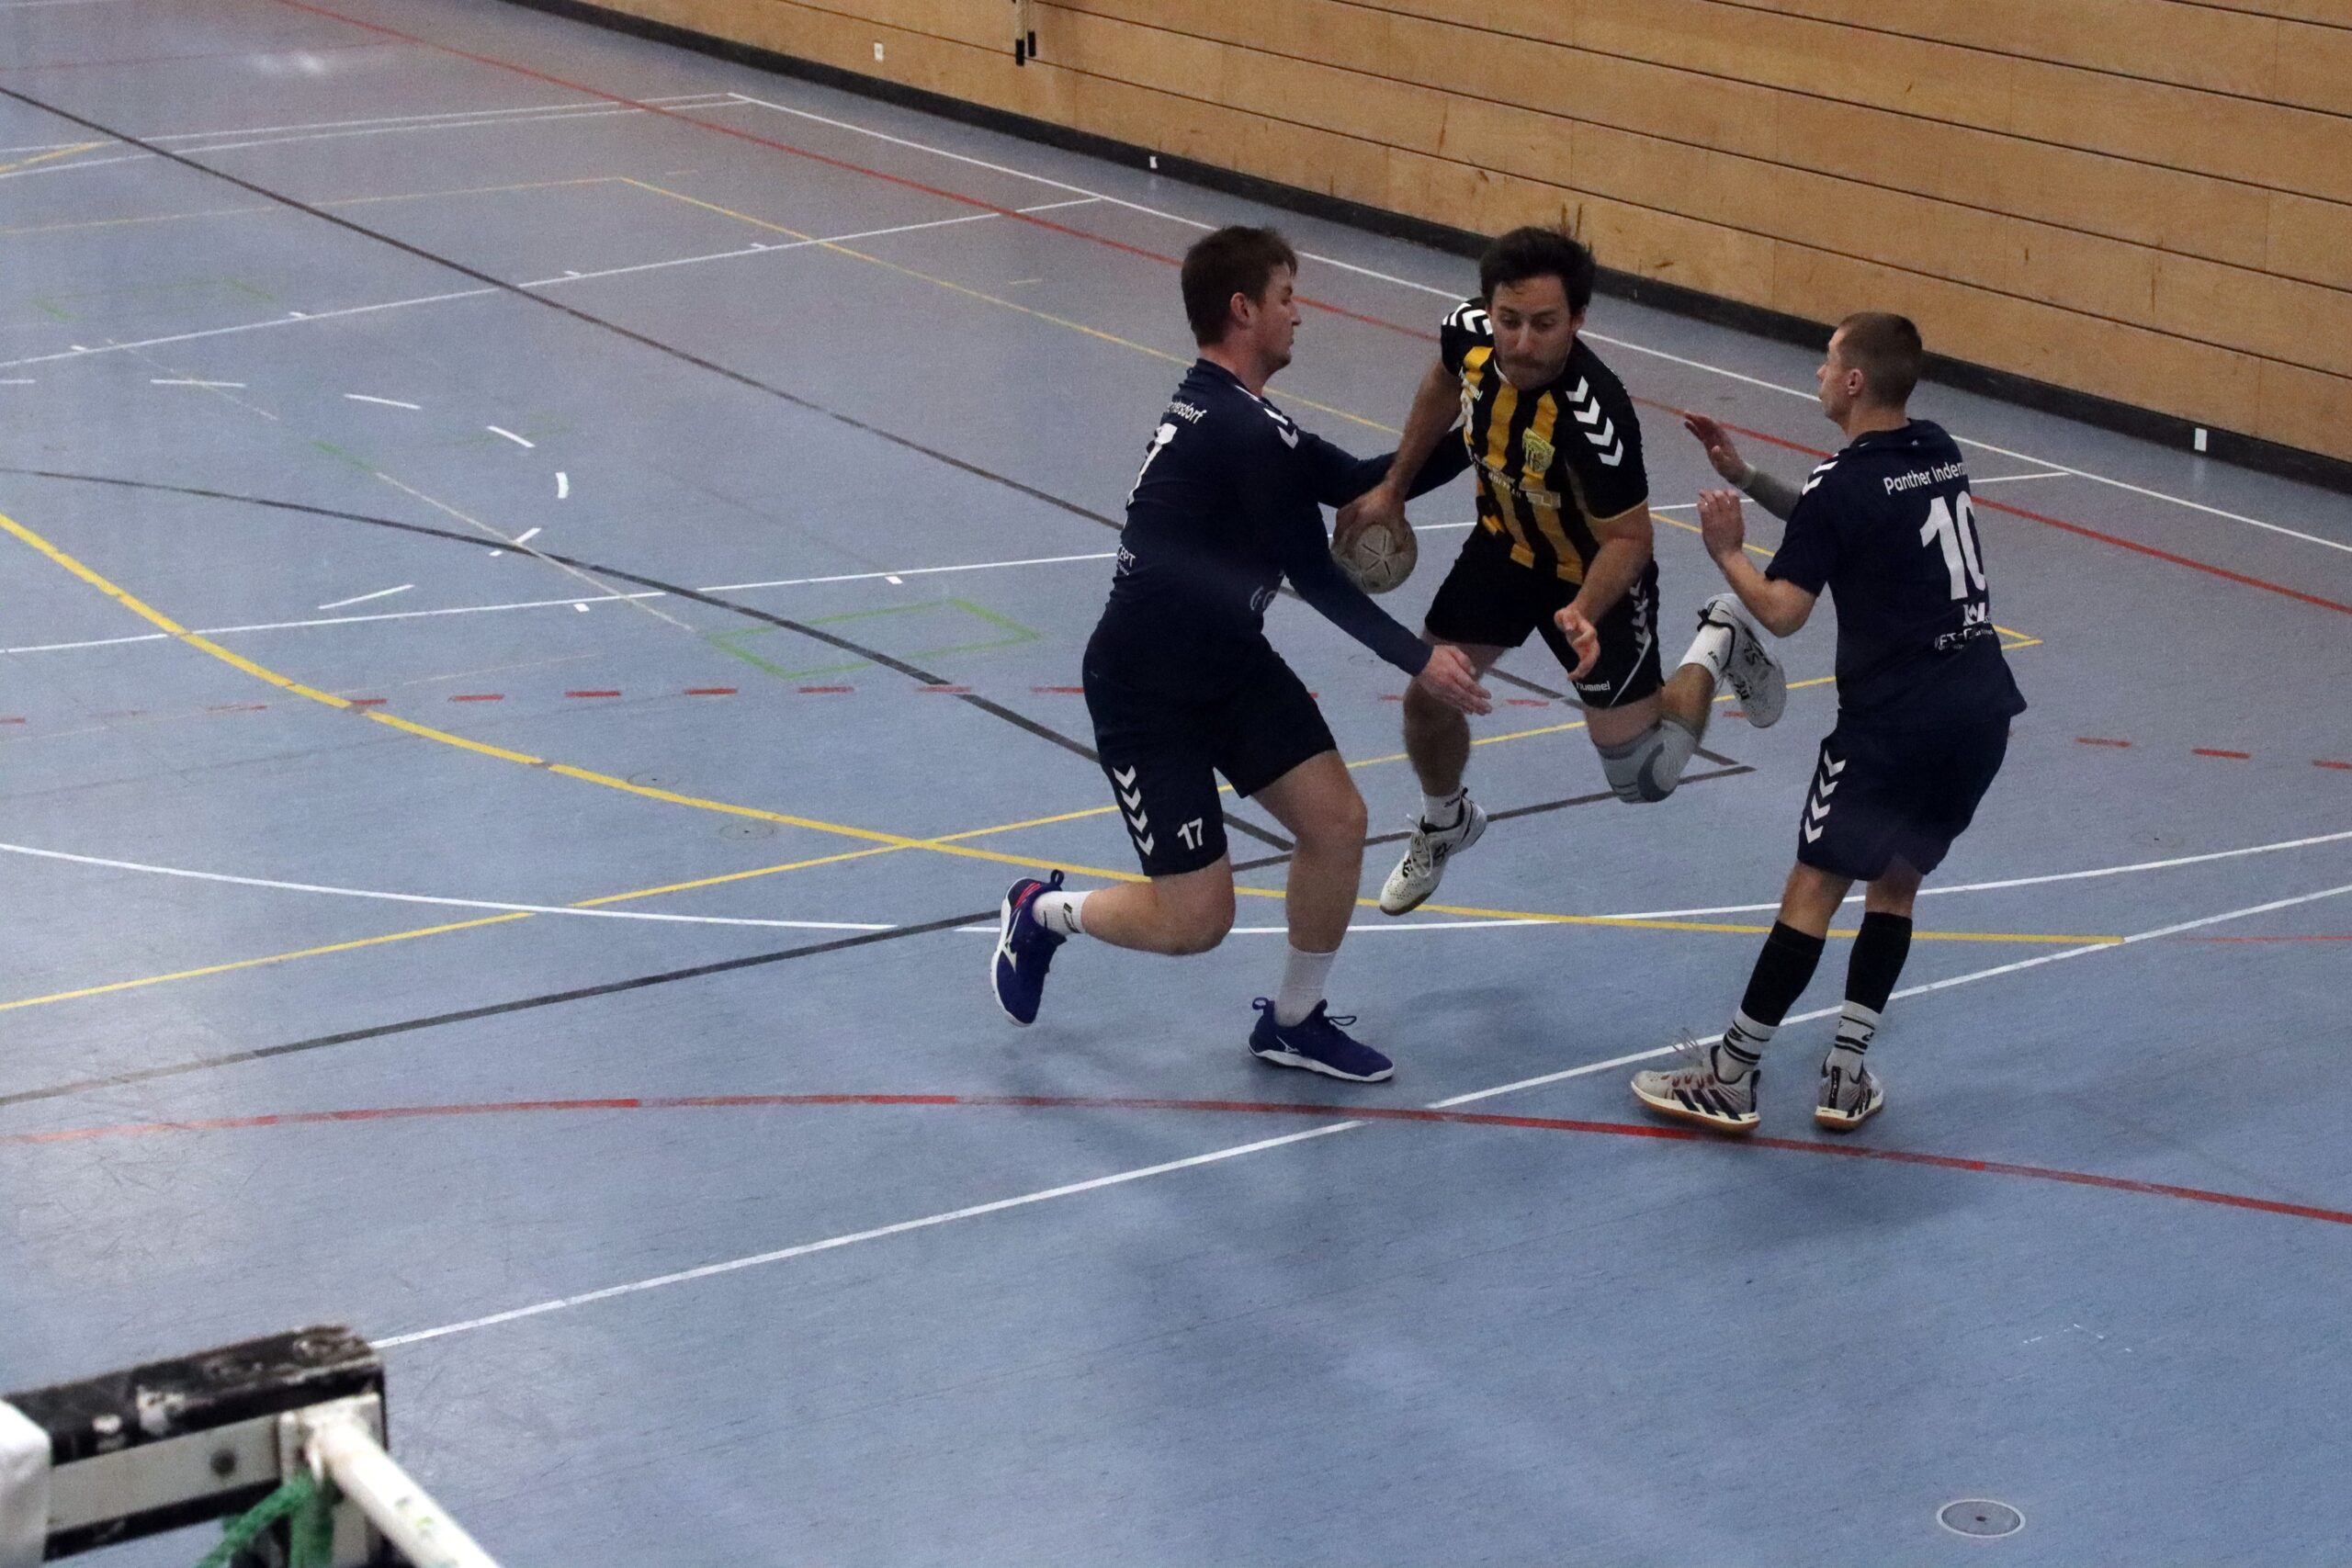 Die Herren der Handball-Füchse im Heimspiel gegen Indersdorf